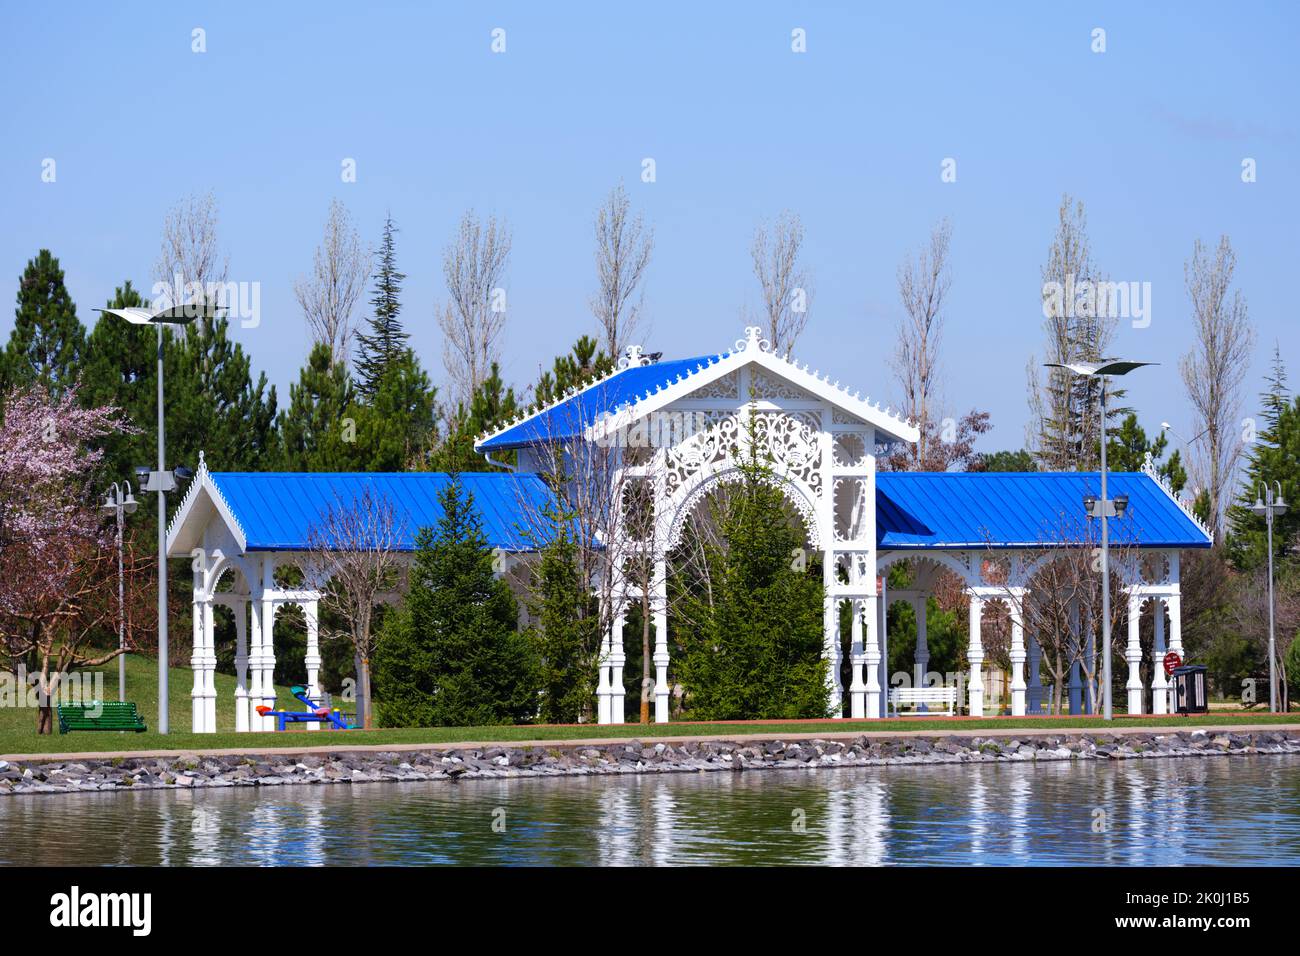 Nostalgischer Holzbahnhof mit blauem Dach in Bäumen am Seeufer im Sommer Stockfoto